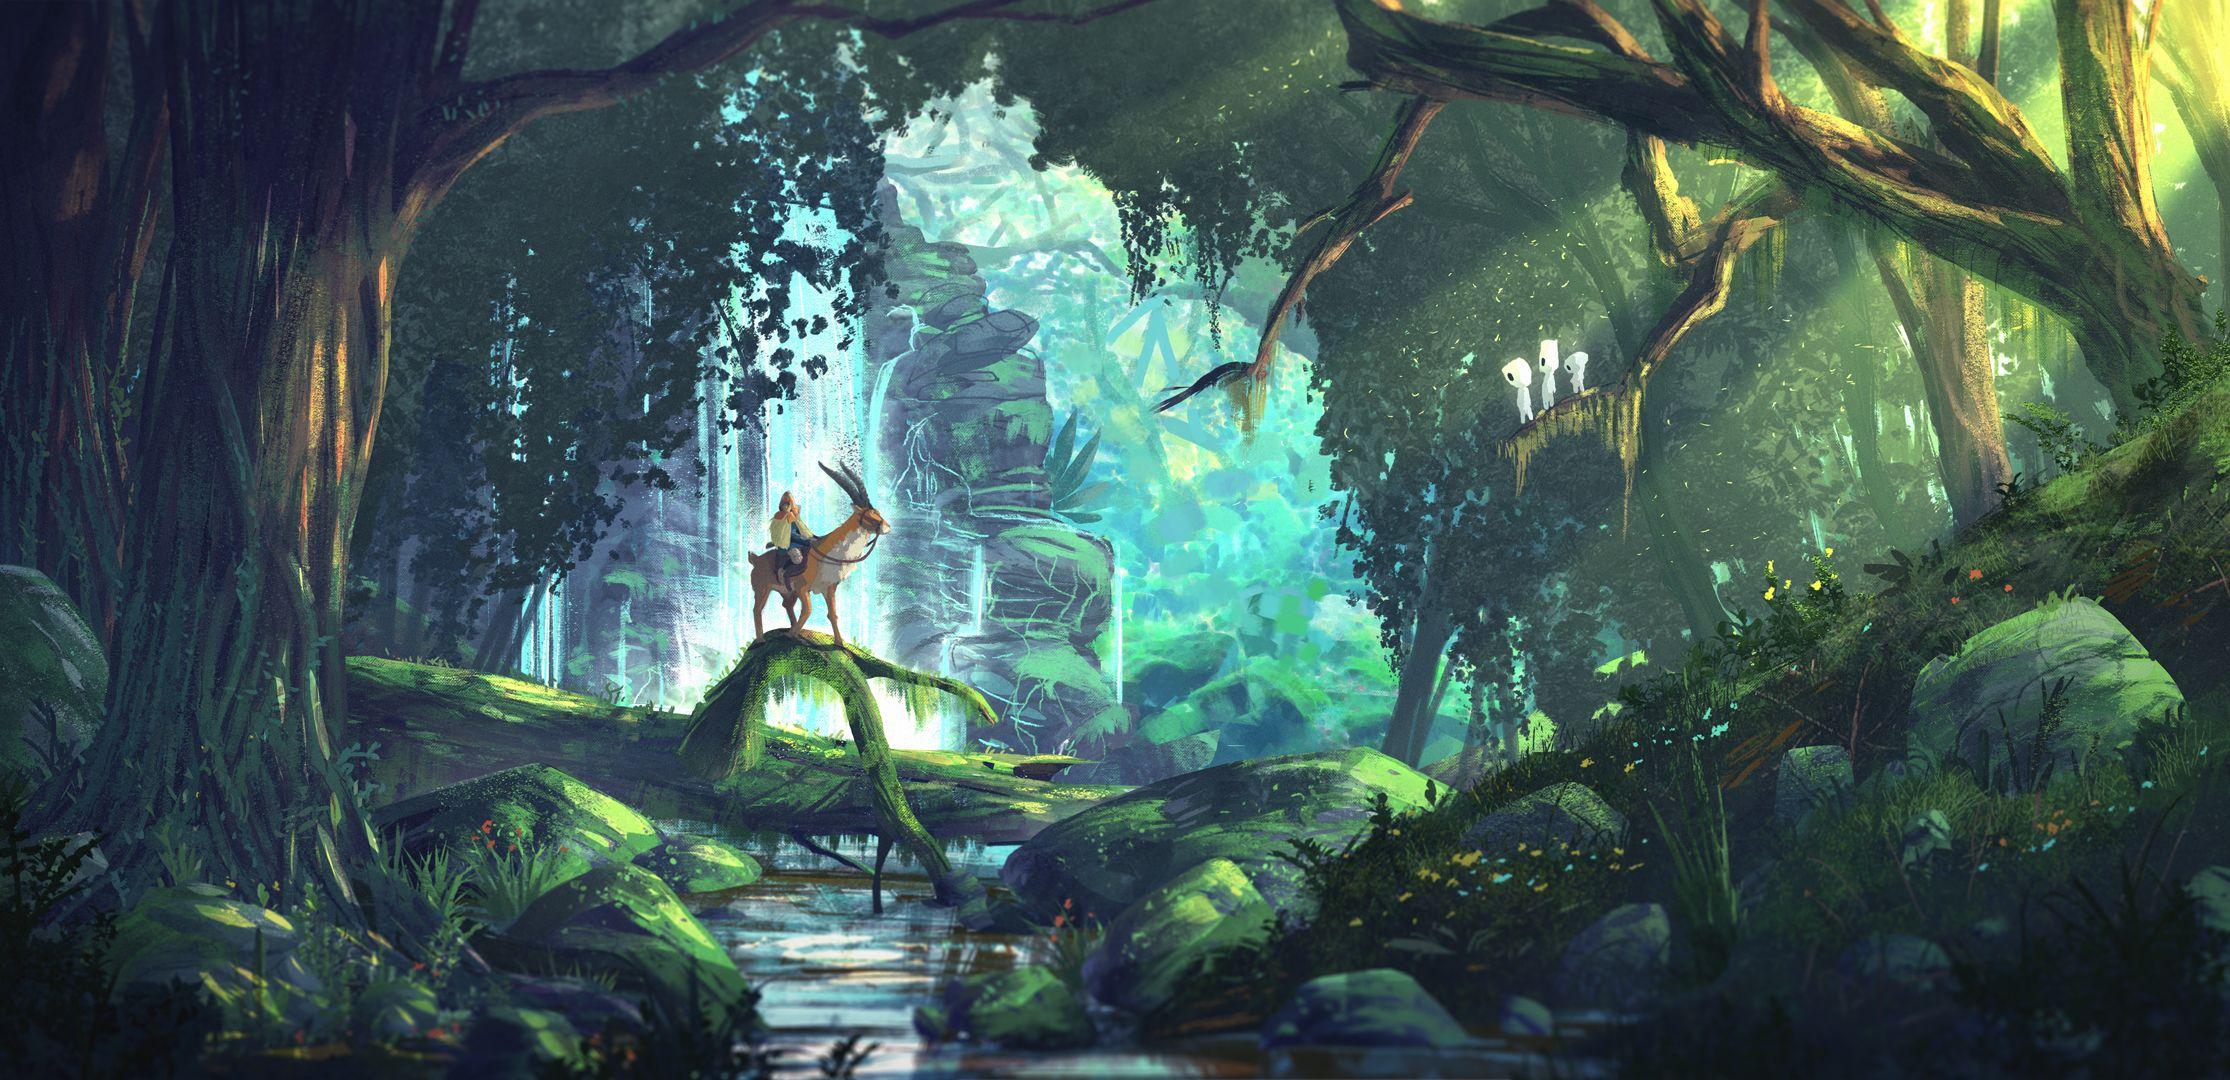 Princess Mononoke Studio Ghibli Wallpapers - Top Free Princess Mononoke  Studio Ghibli Backgrounds - WallpaperAccess